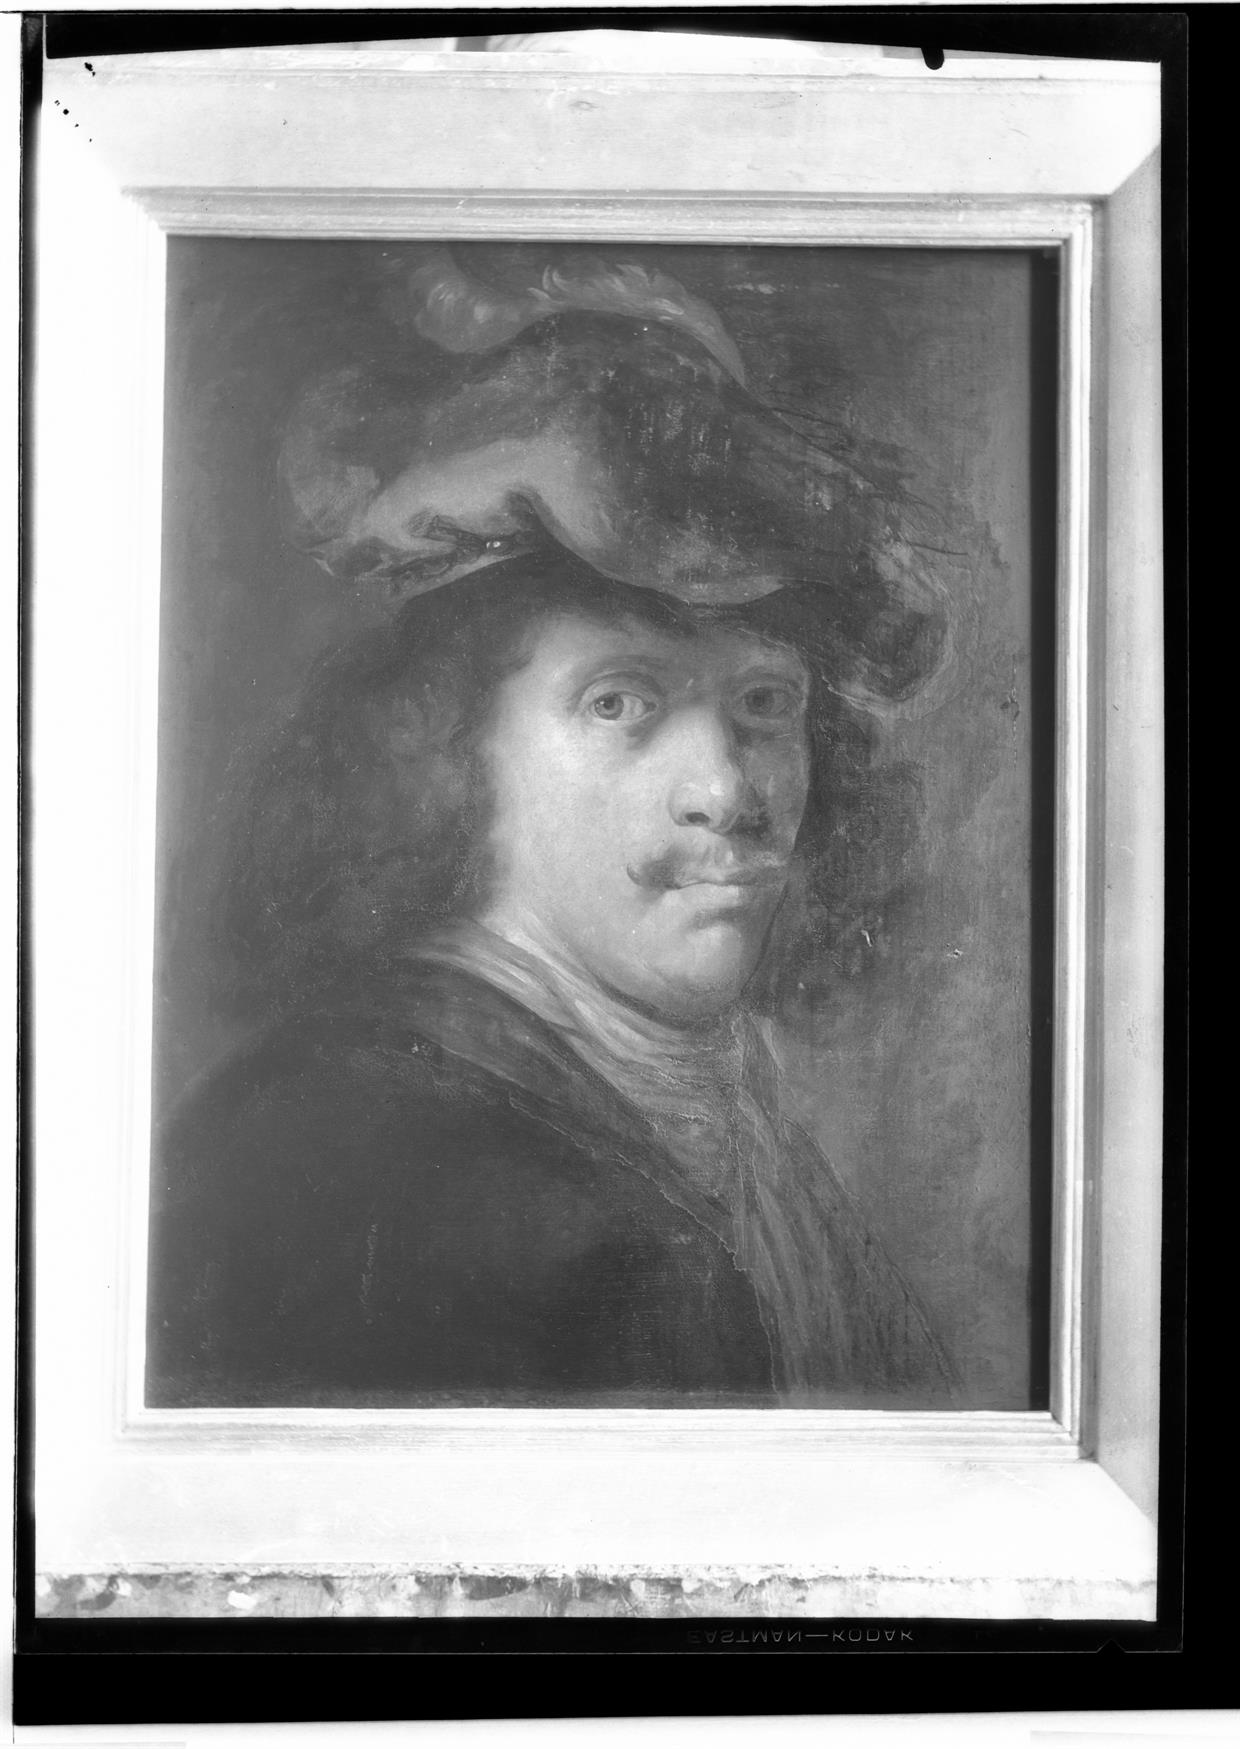 Auto-retrato de Rembrandt : pintura